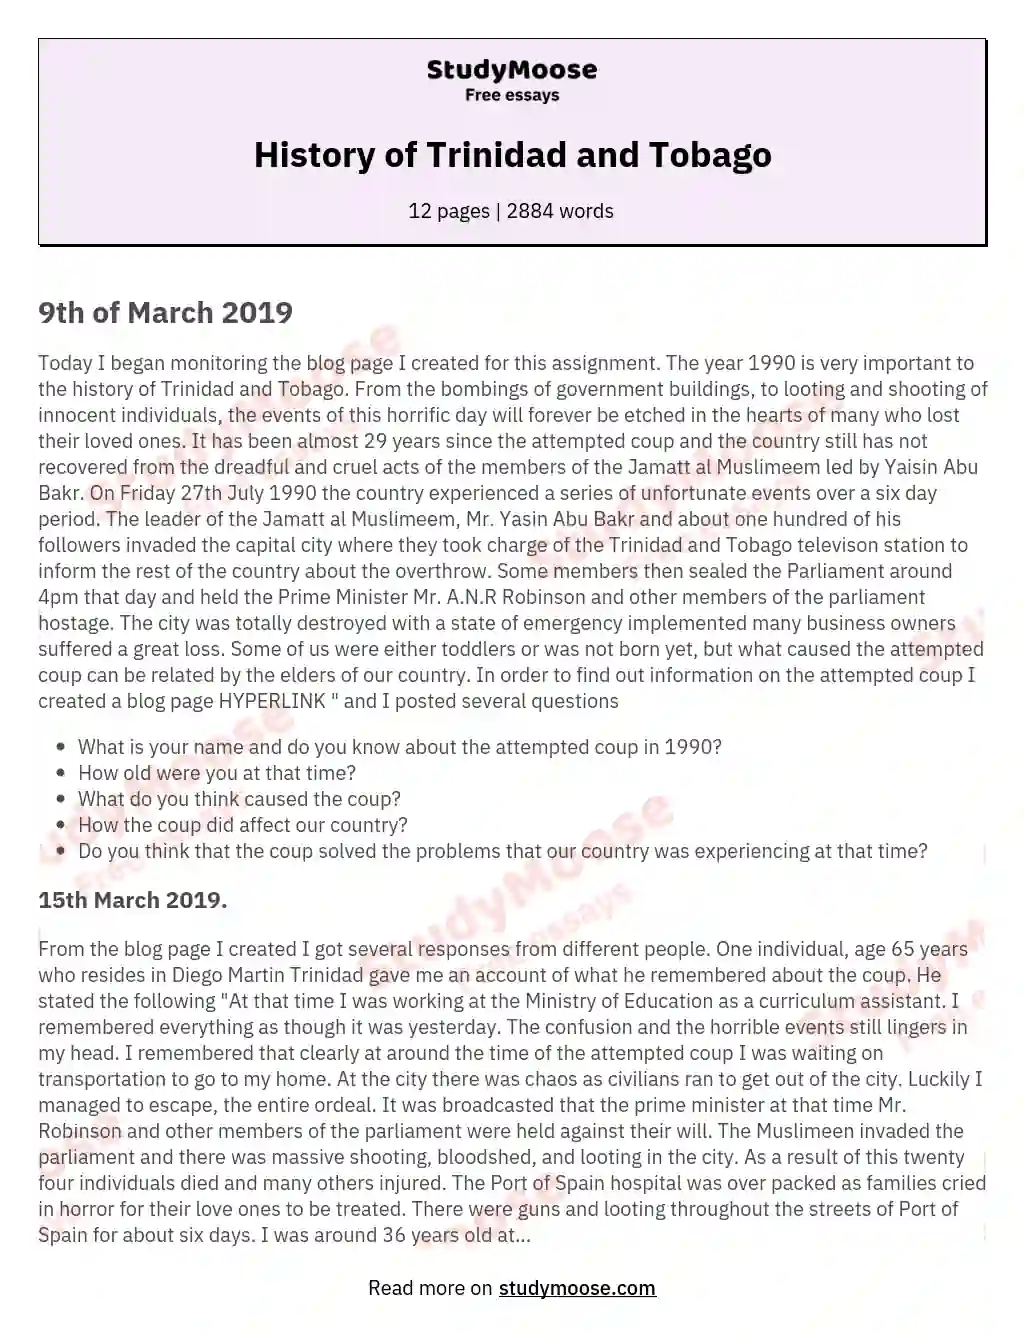 History of Trinidad and Tobago essay